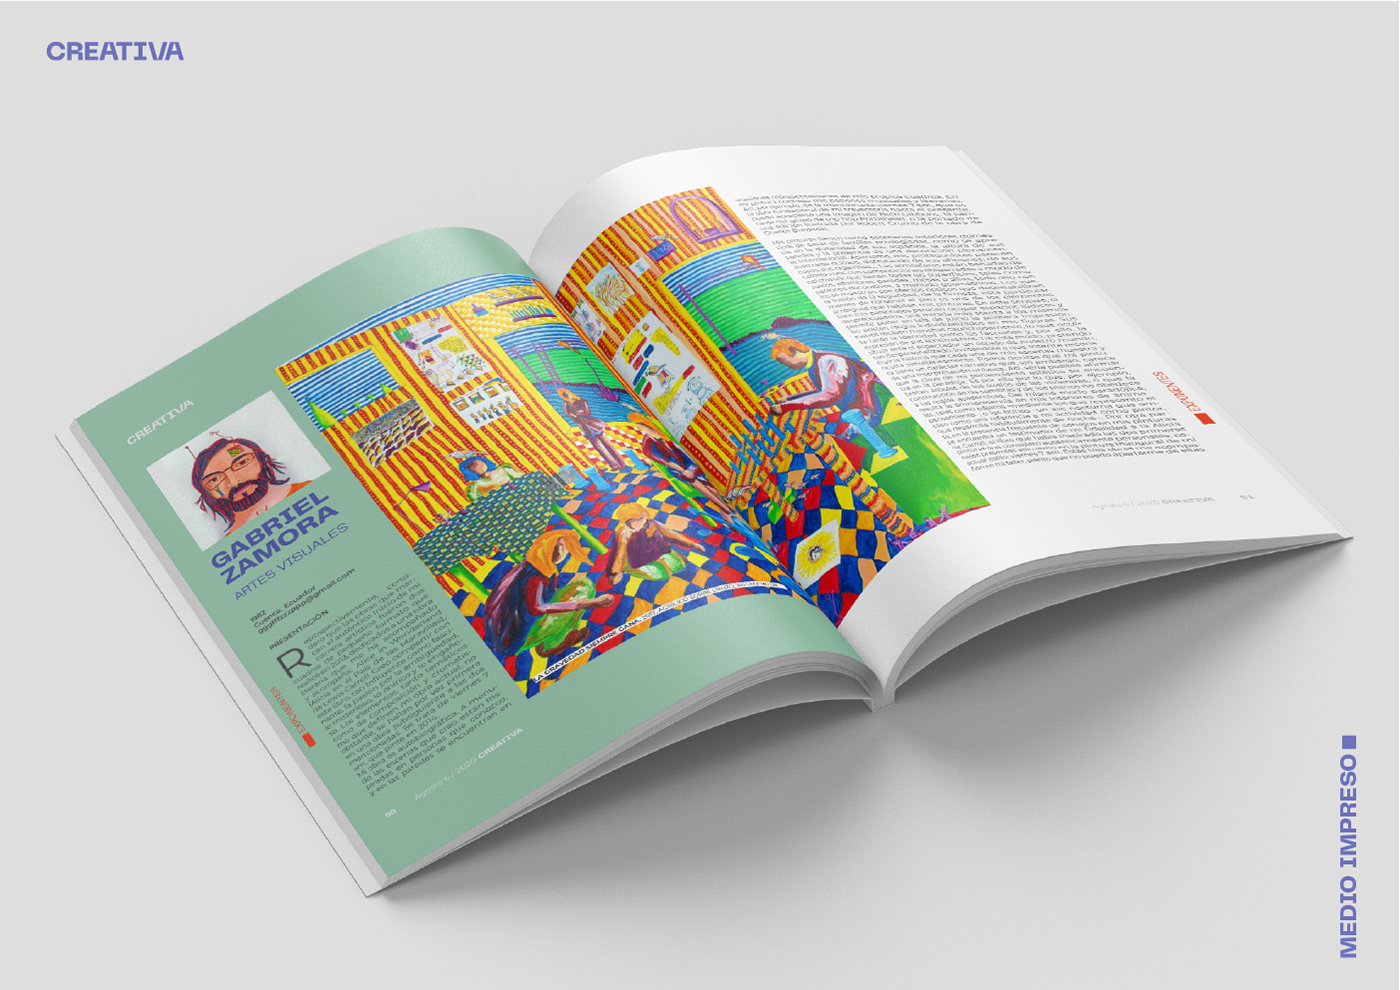 Creativa cuenca diagramación diseño editorial magazine maquetación revista